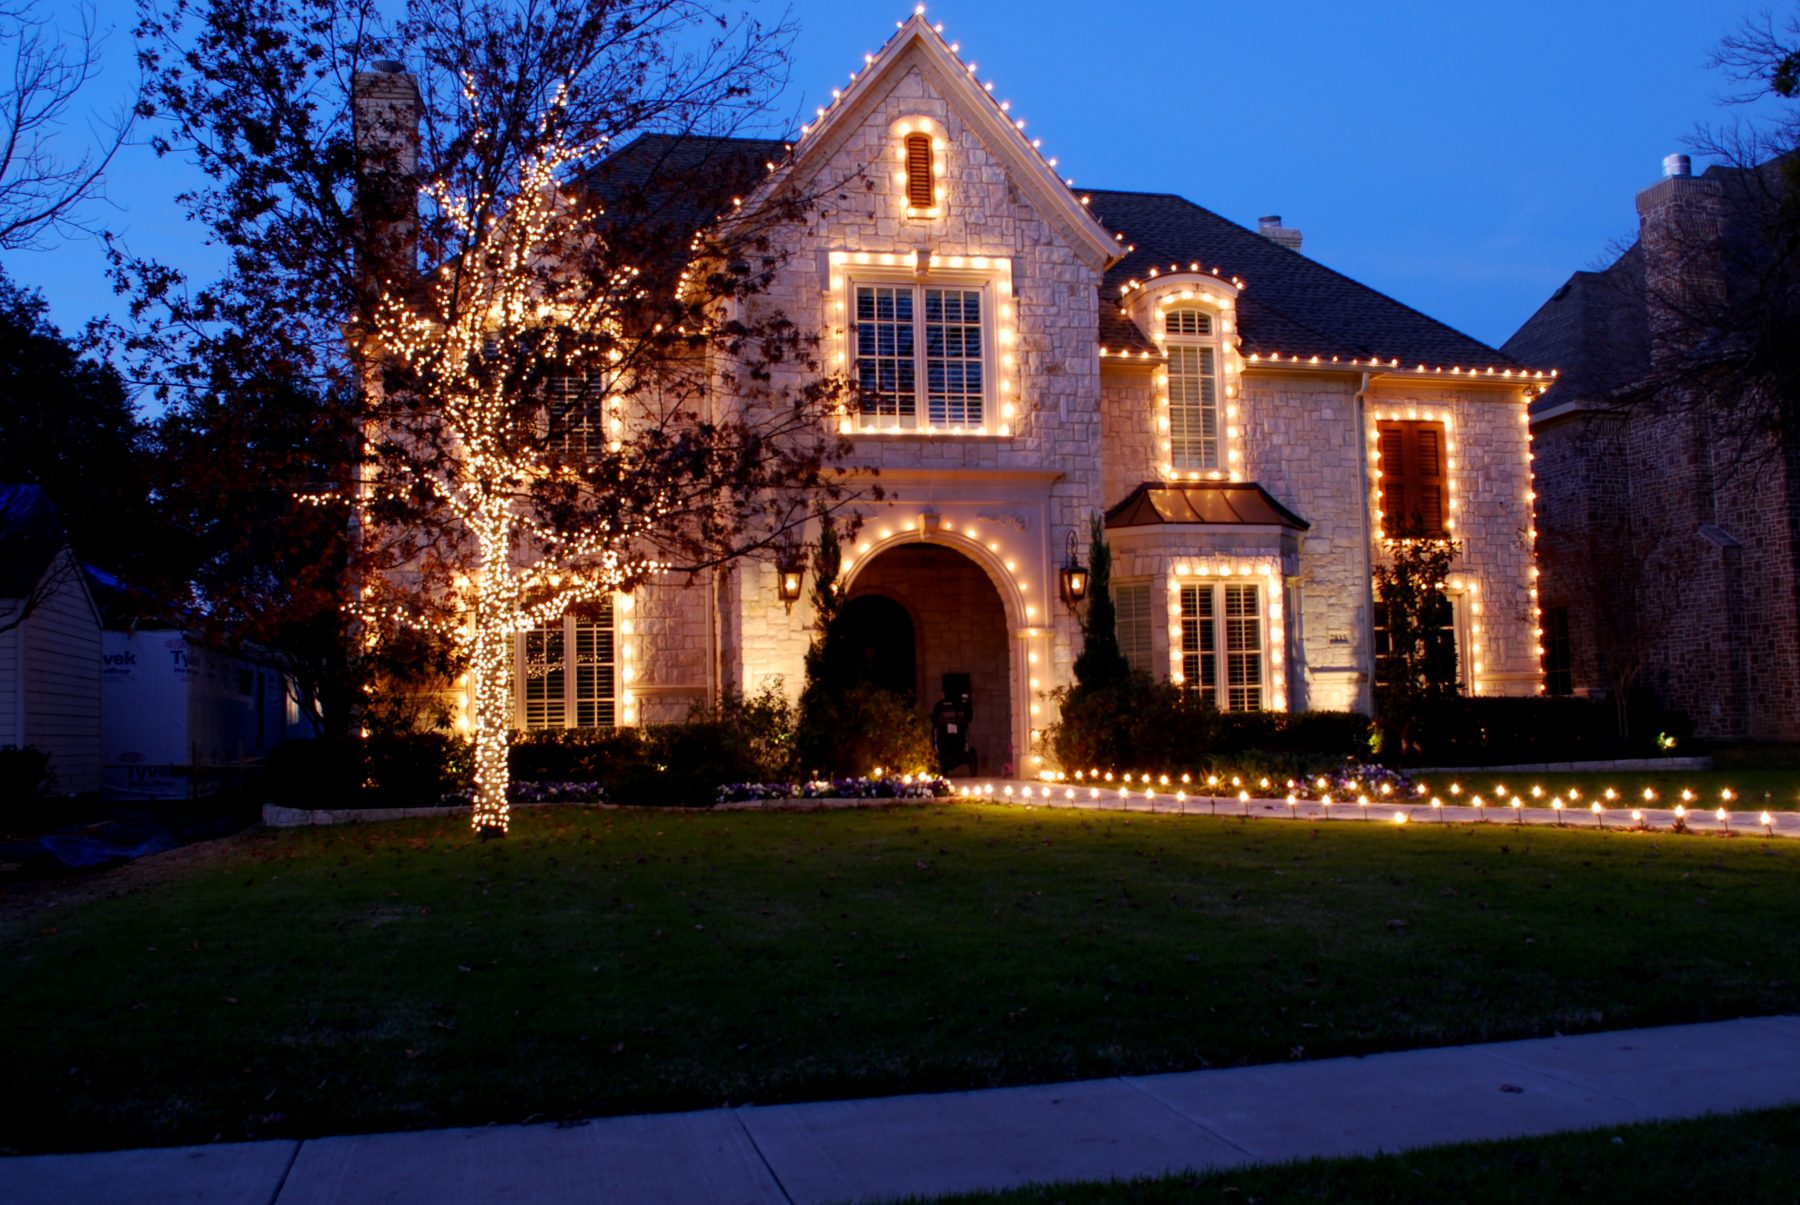 An example of a boring Christmas lights display.